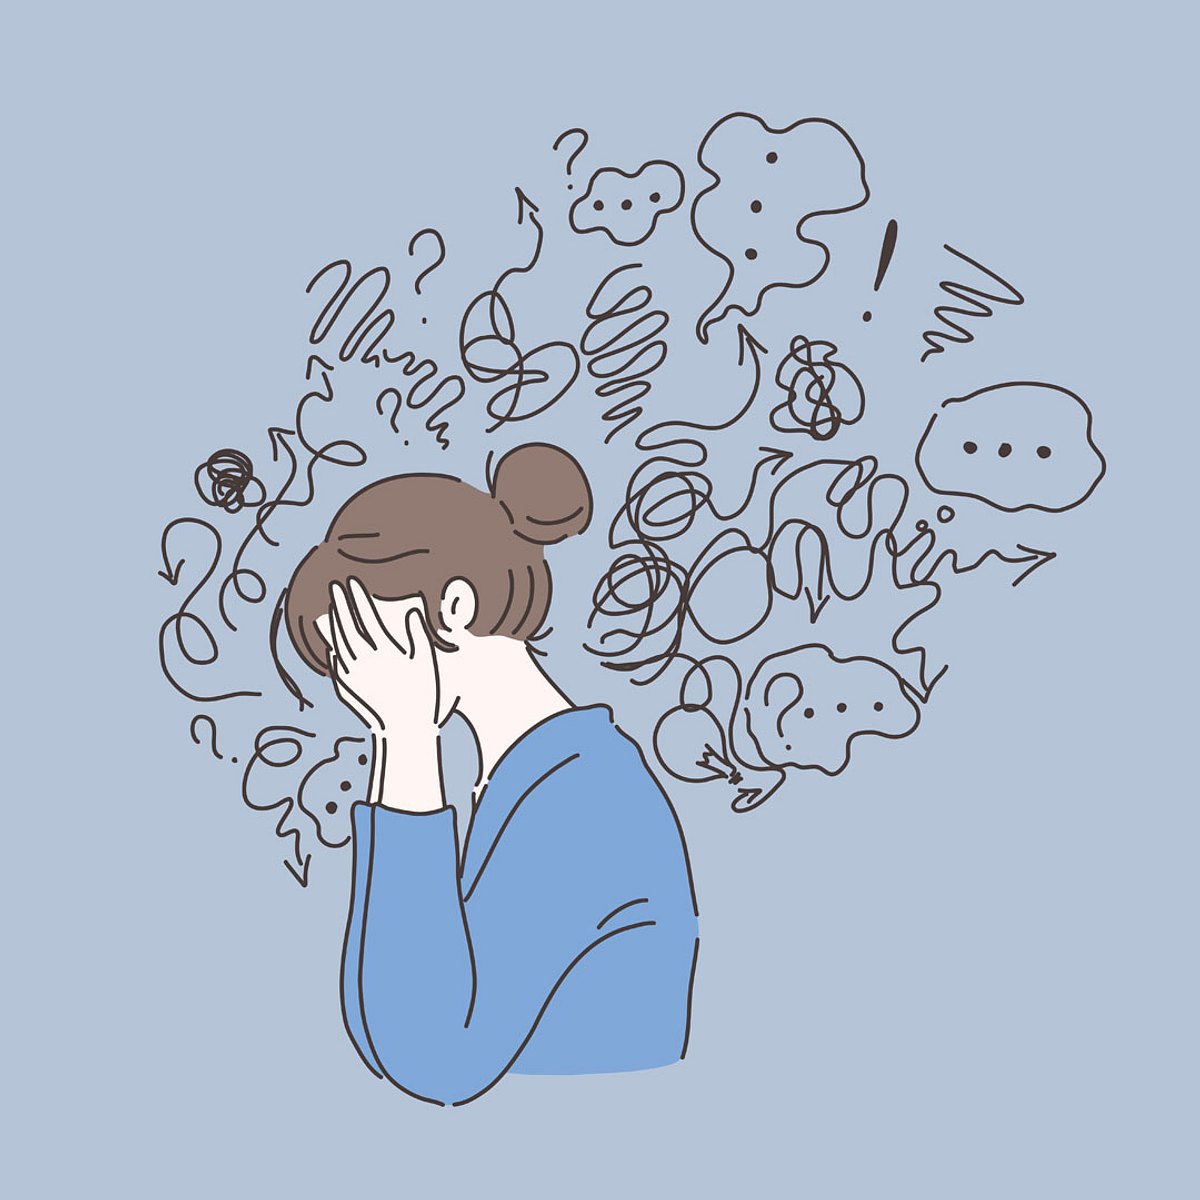 4 Anzeichen, dass du unmotiviert bist - und nicht faul: Du bist gestresst